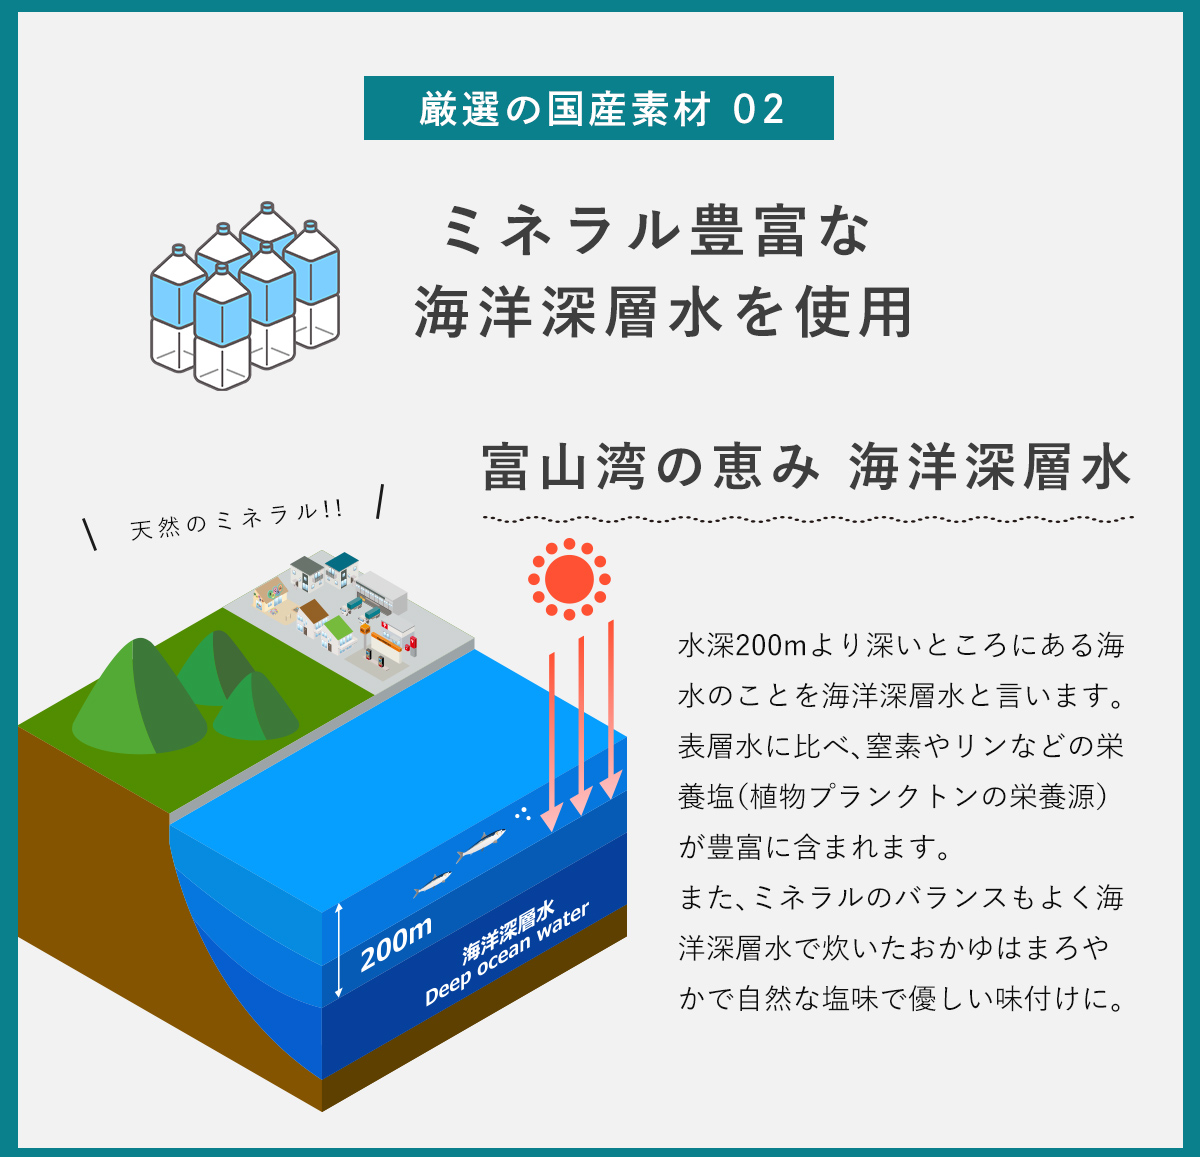 厳選の国産素材2。ミネラル豊富な富山県産海洋深層水